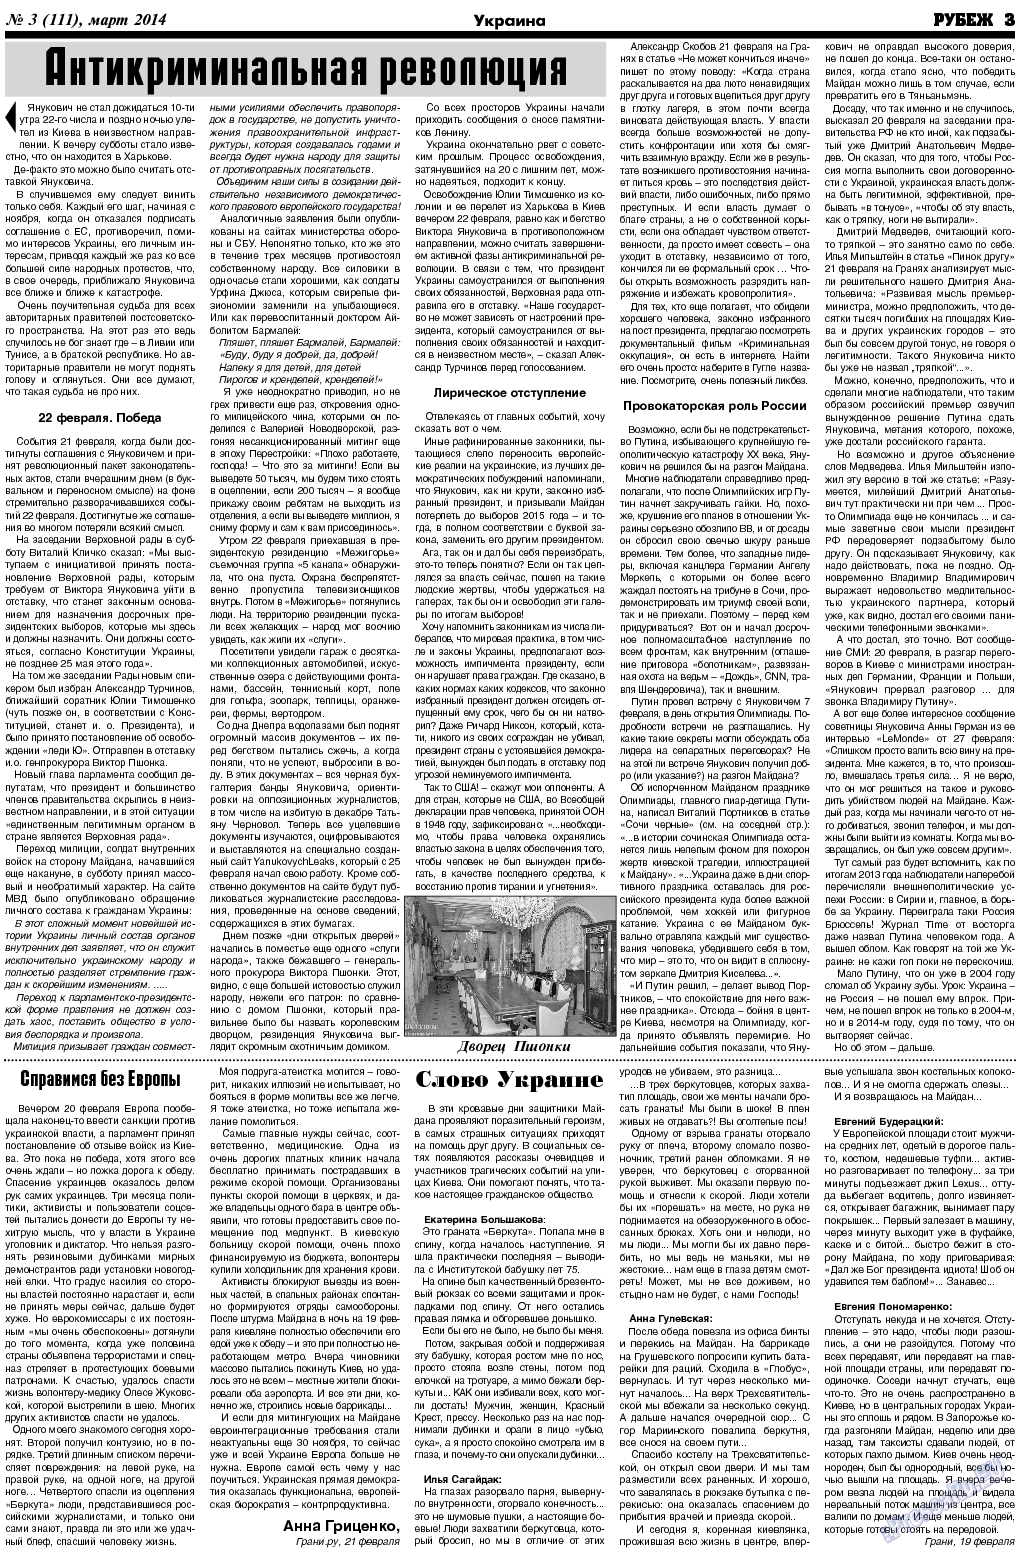 Рубеж (газета). 2014 год, номер 3, стр. 3